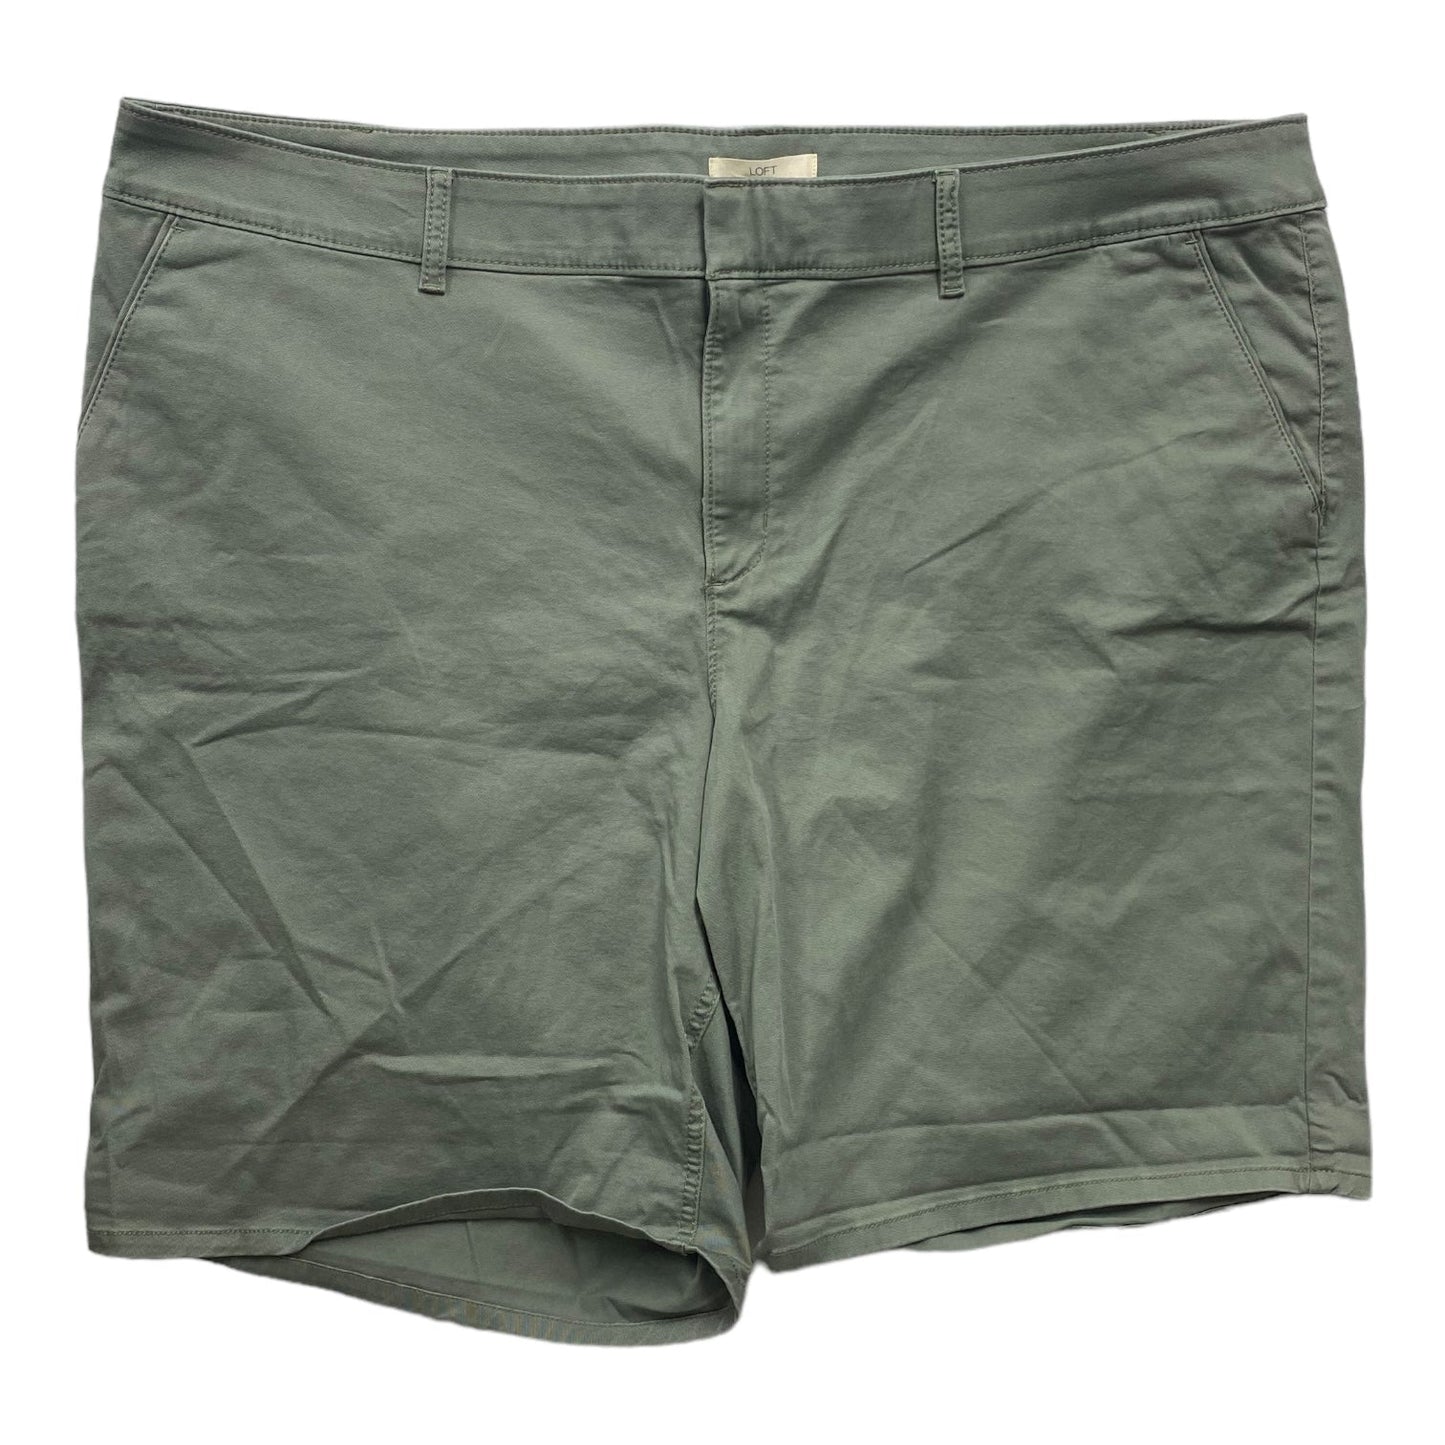 Green Shorts Loft, Size 26